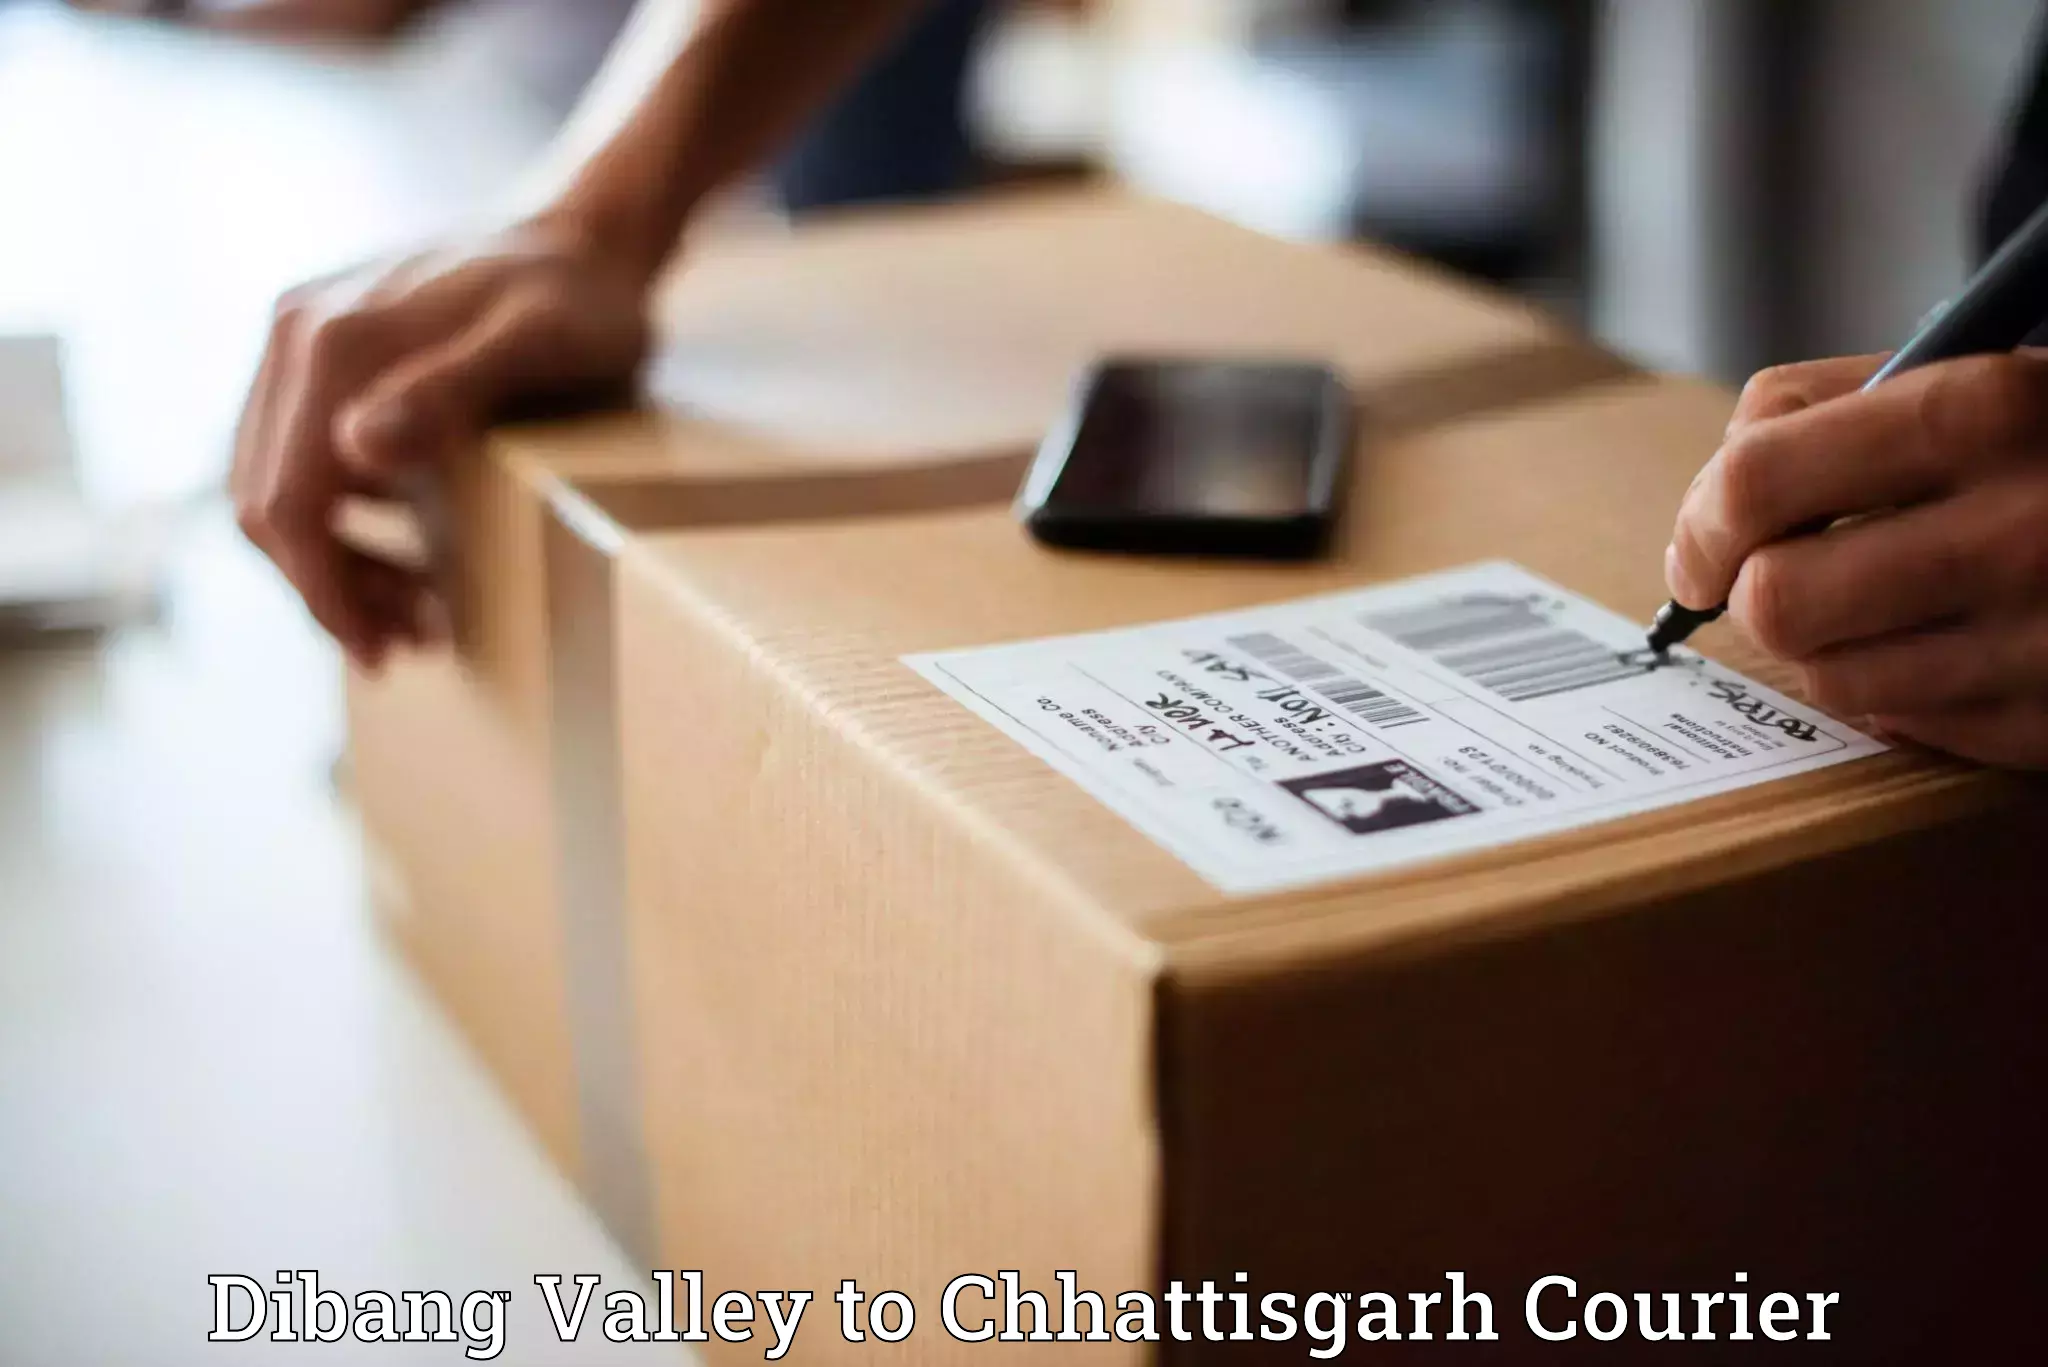 24/7 shipping services Dibang Valley to Korea Chhattisgarh